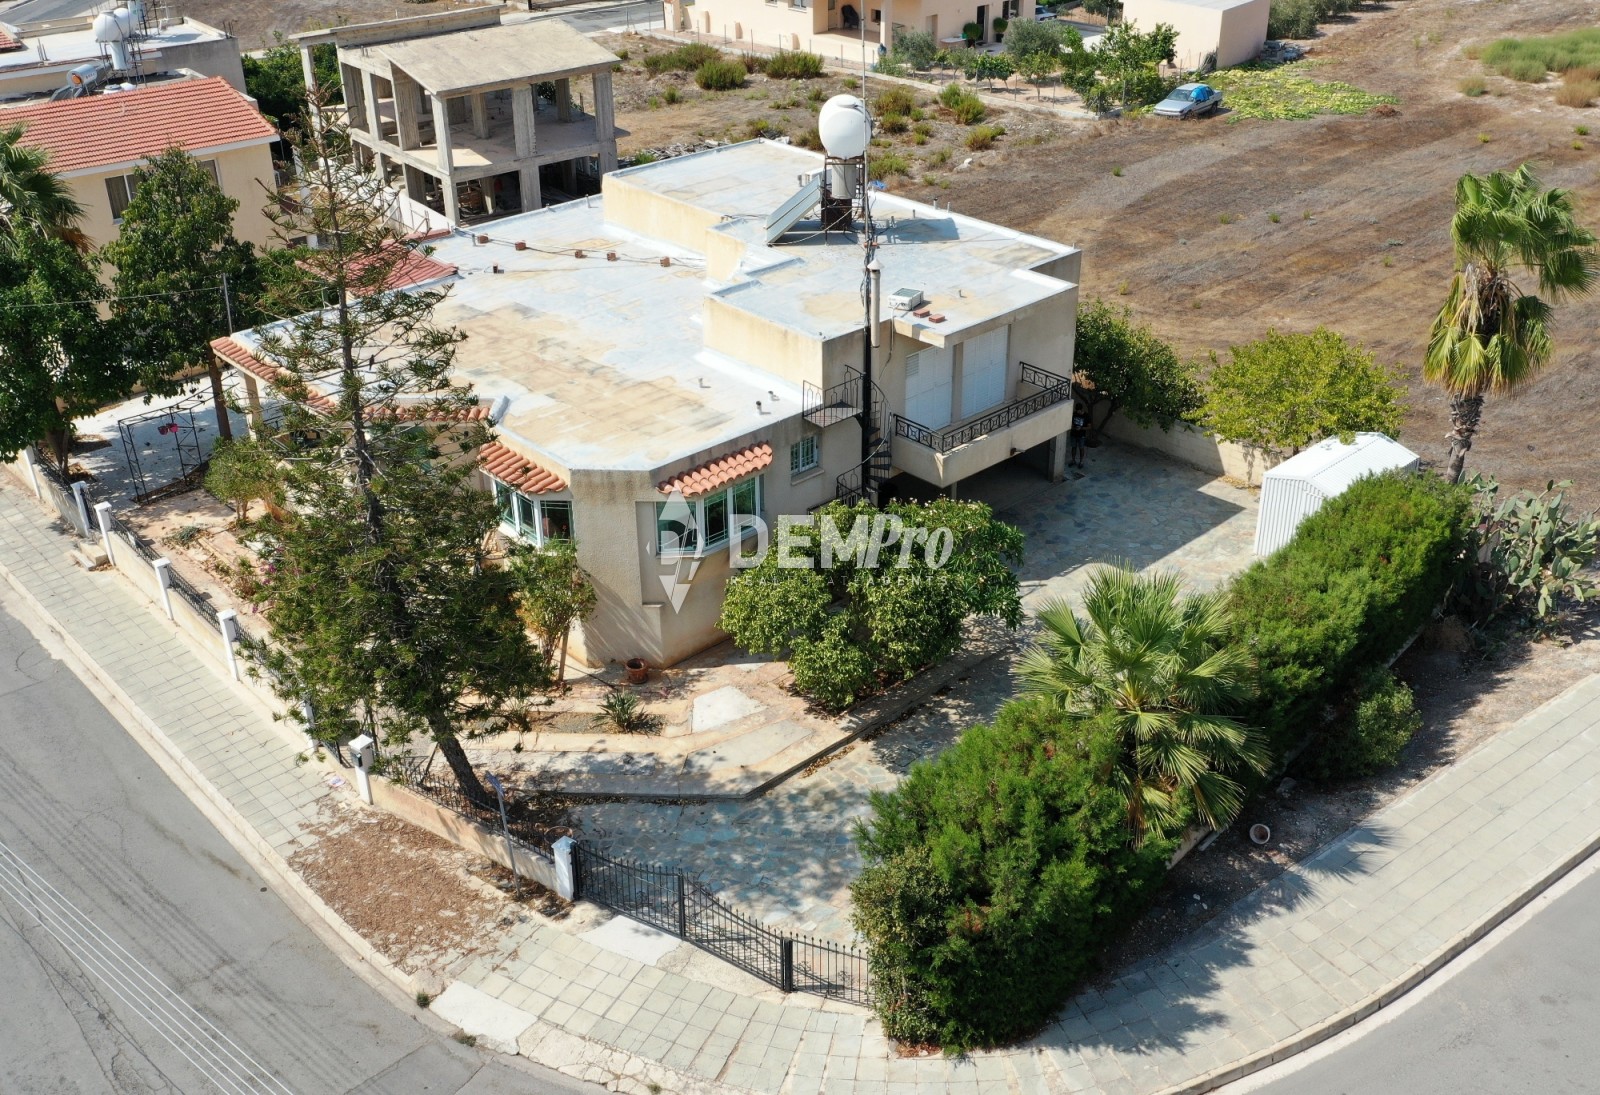 Villa For Sale in Yeroskipou, Paphos - DP1690